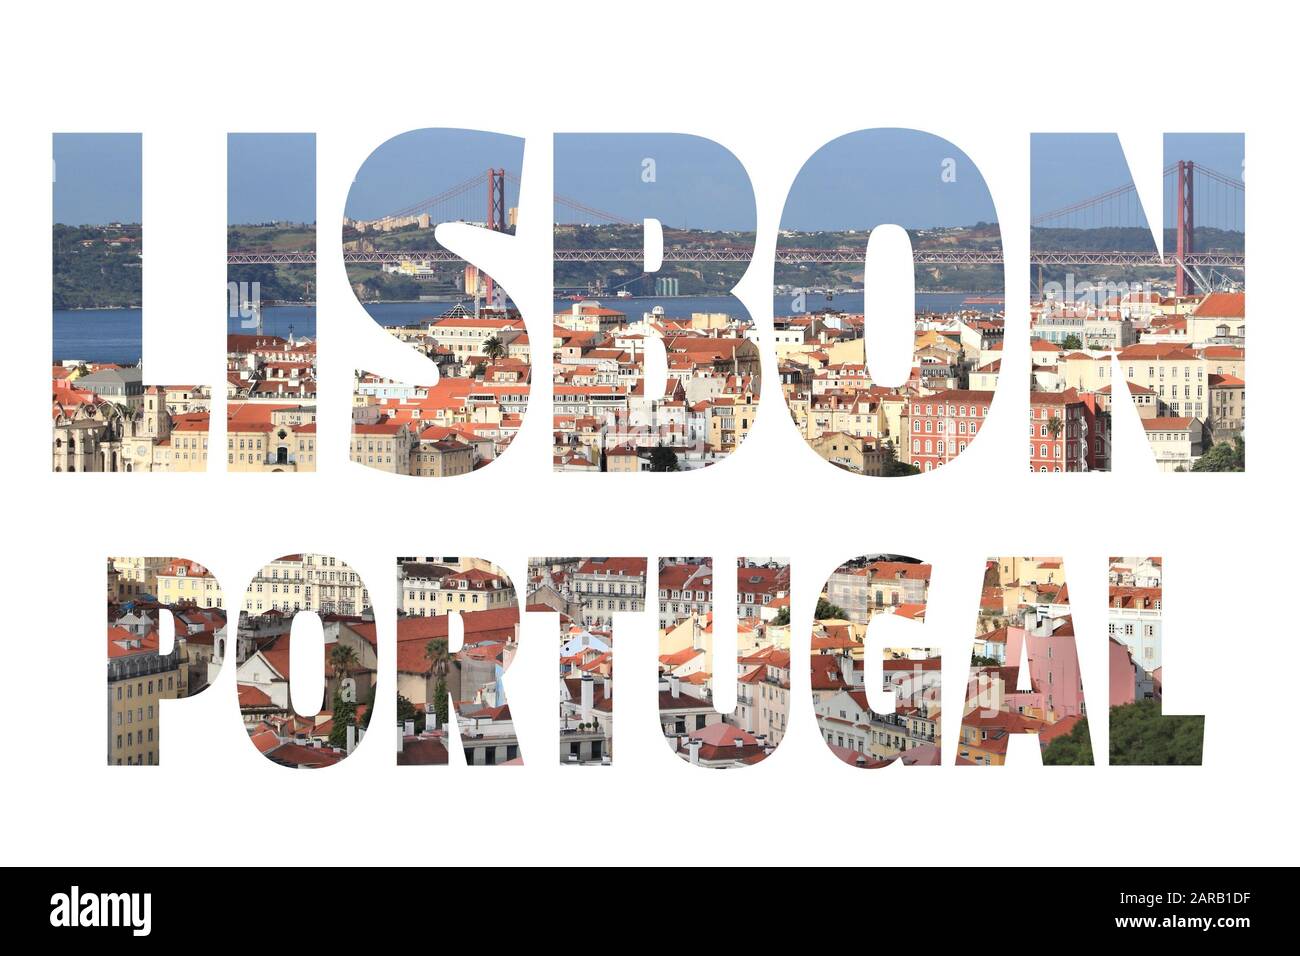 Lissabonner Schild - Name der Hauptstadt Portugals mit Hintergrundfoto auf der Postkarte. Stockfoto